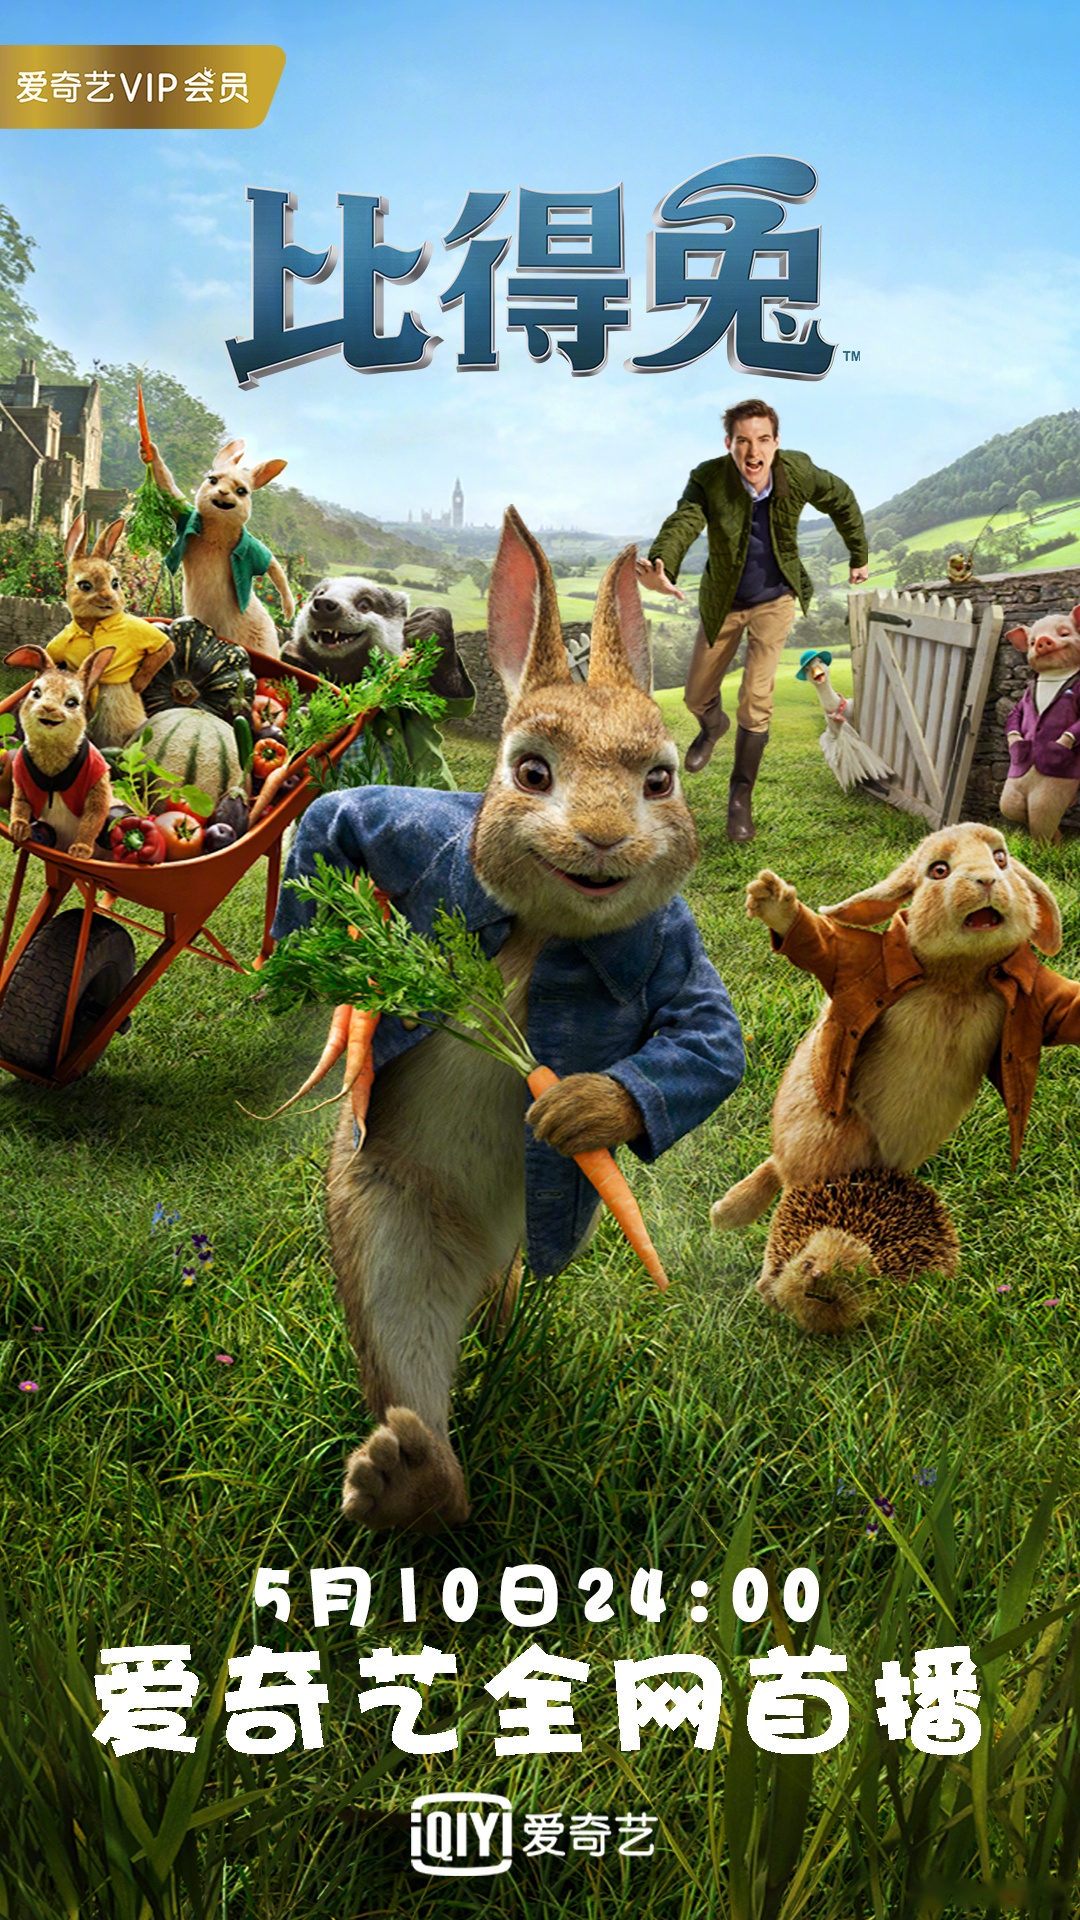 英国百年经典ip改编的真人动画电影《比得兔》今日爱奇艺电影24点全网